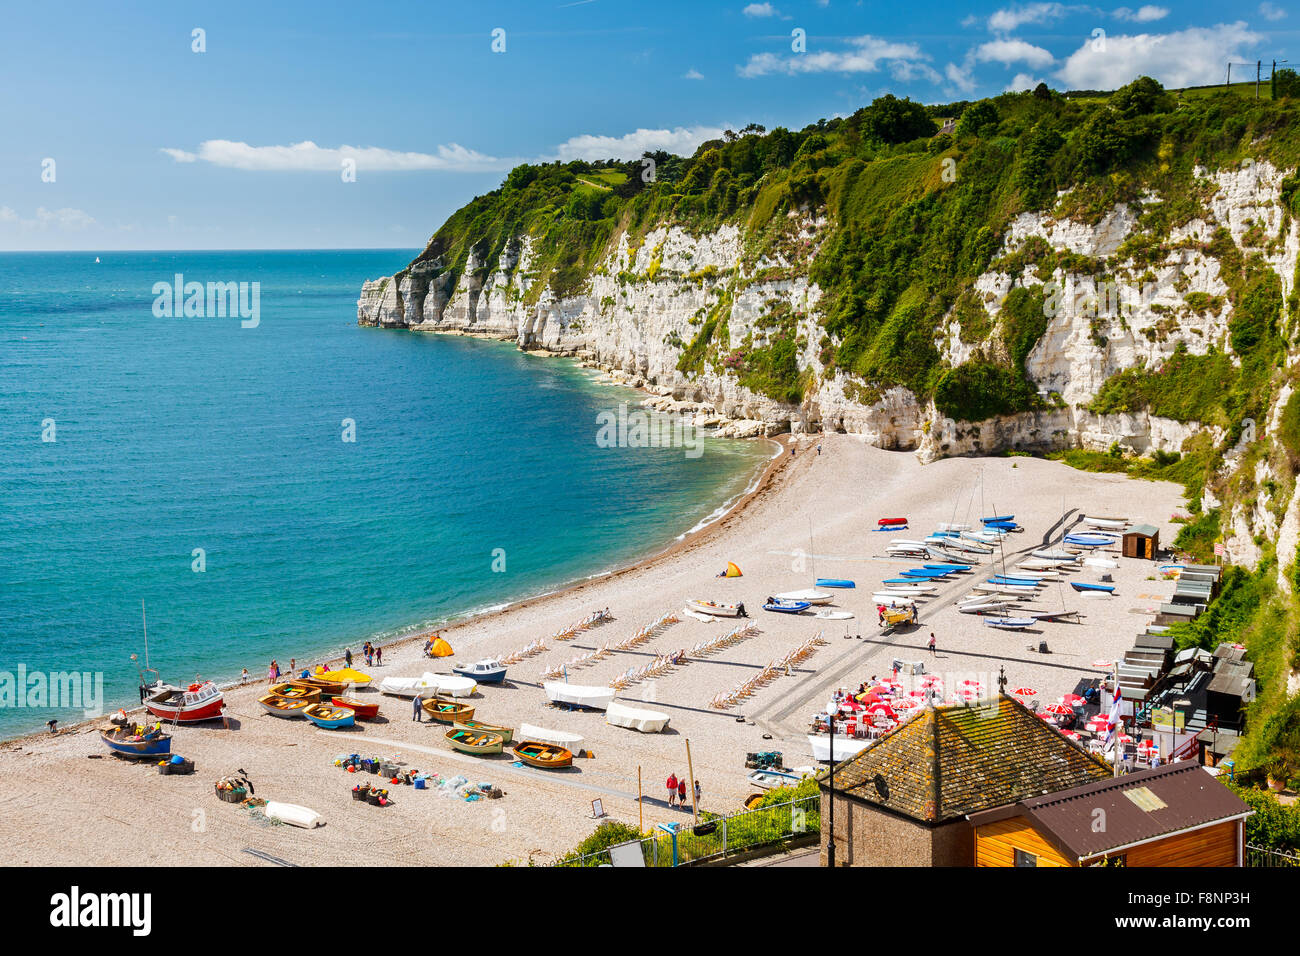 Donnant sur la plage et falaises de la bière dans la baie de Lyme Devon, Angleterre Angleterre Europe Banque D'Images